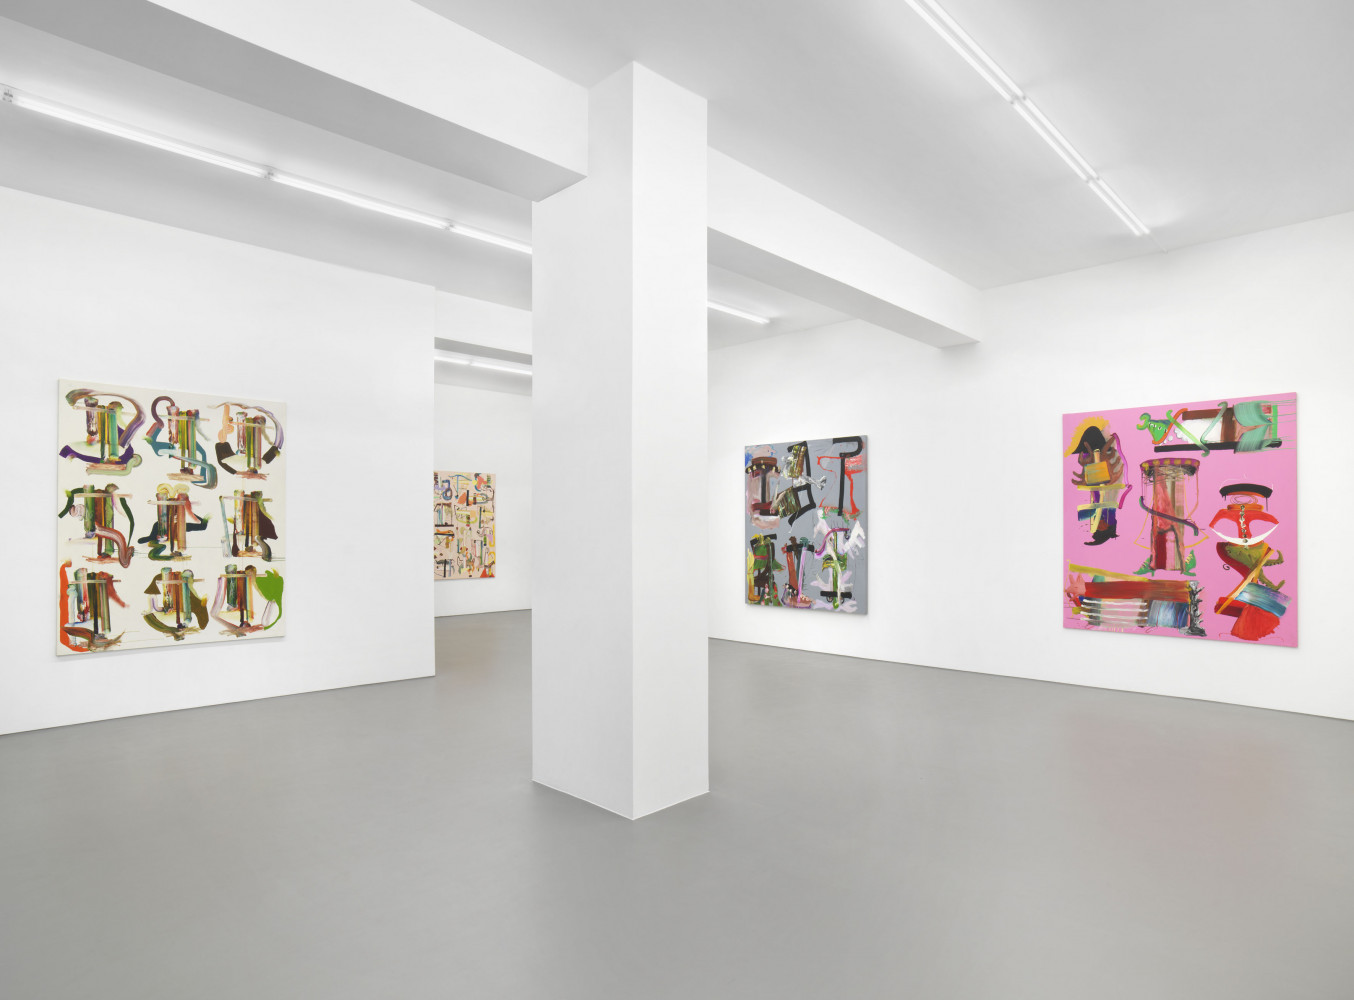 Fiona Rae, ‘Fiona Rae - Row Paintings’, Installationsansicht, Buchmann Galerie, 2021